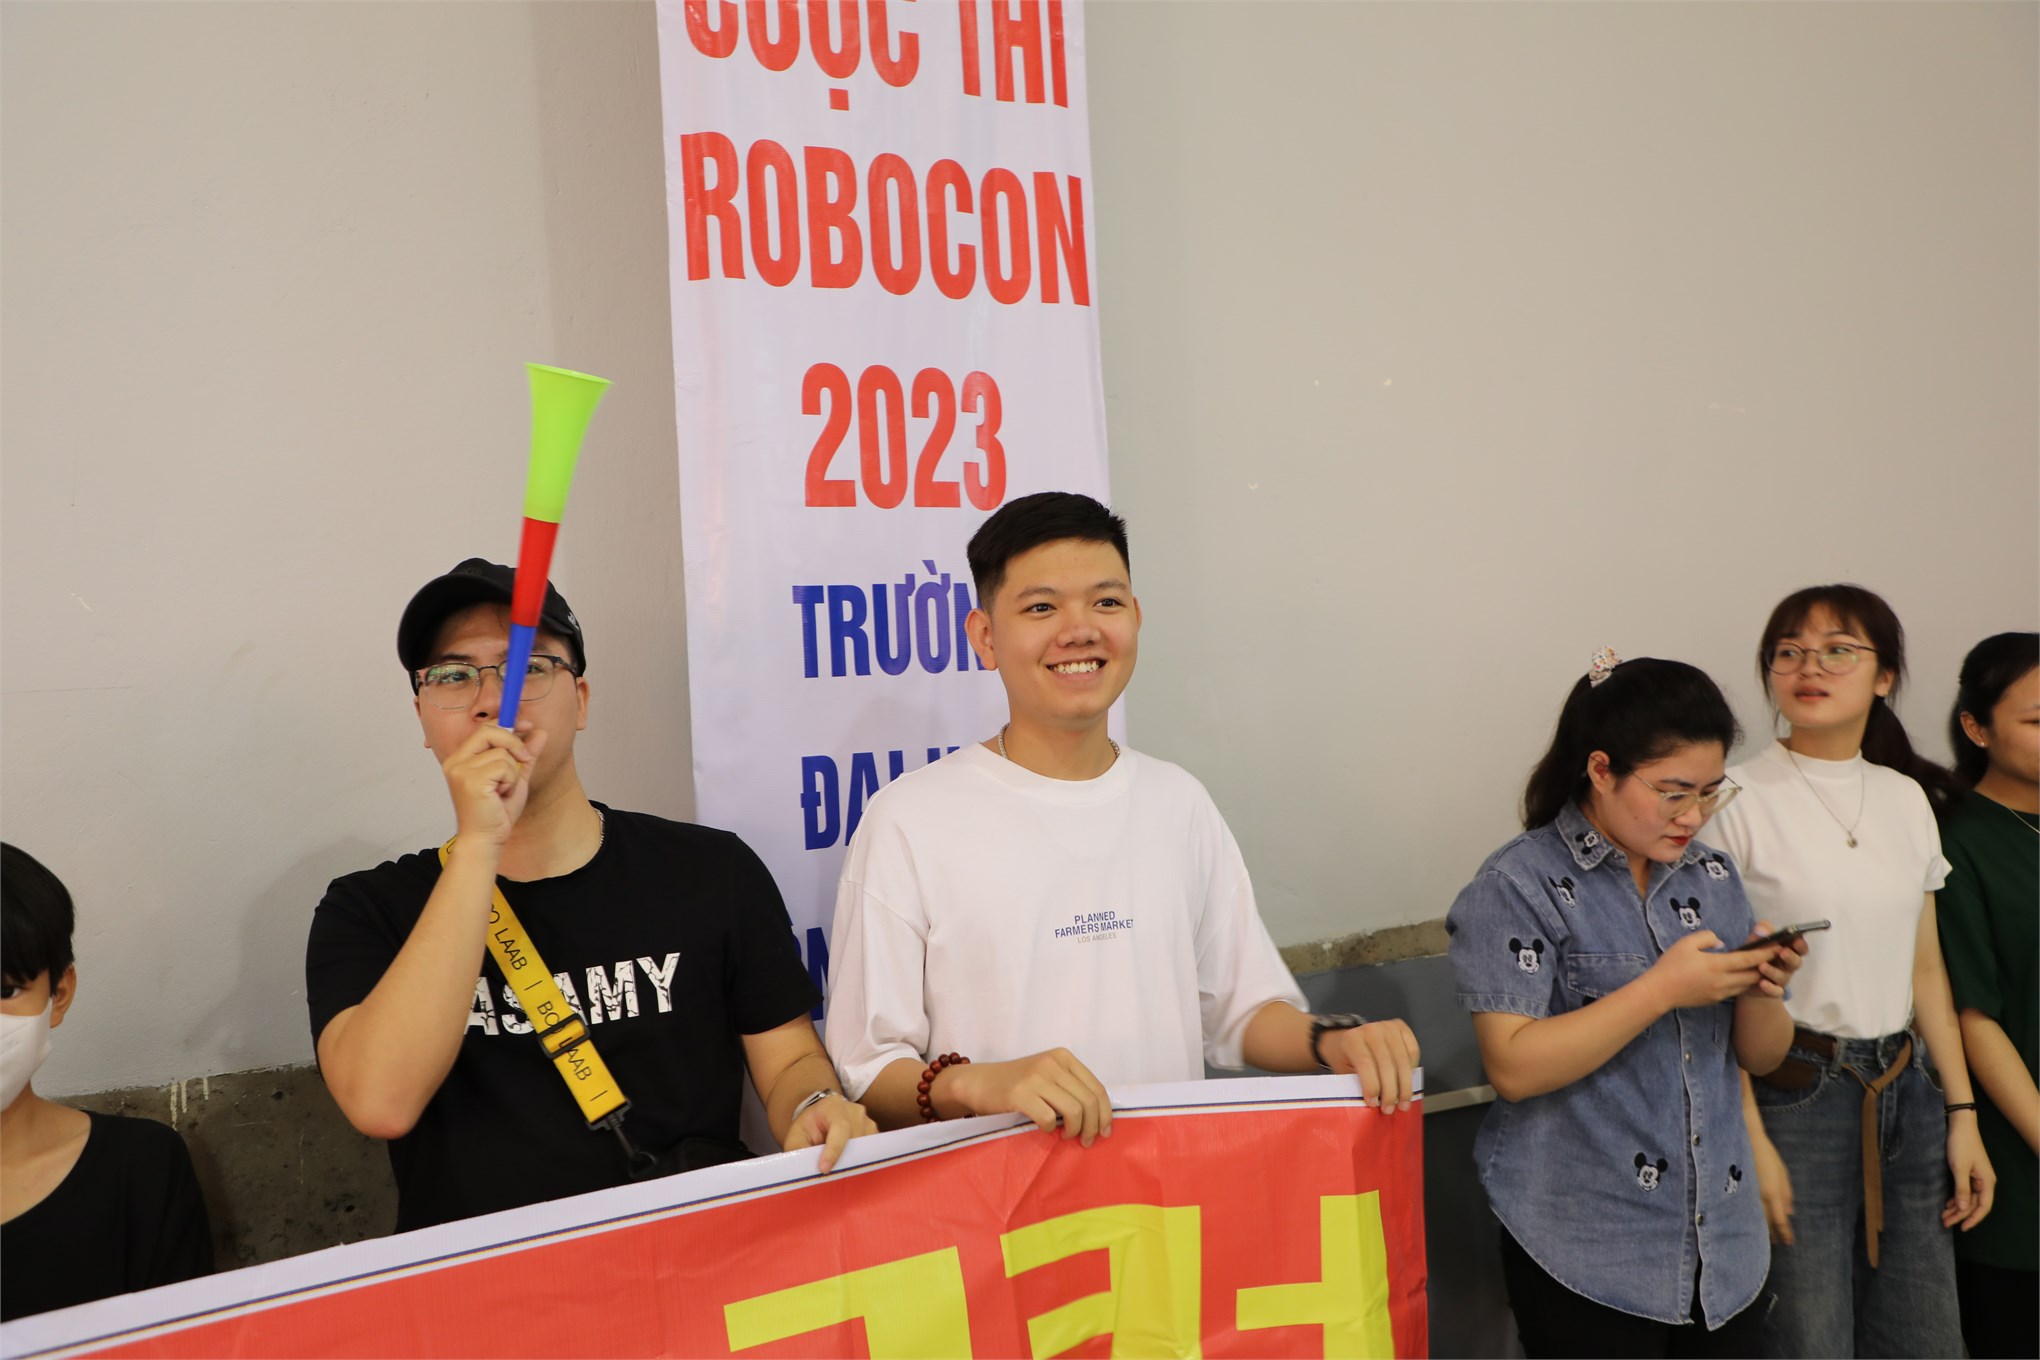 ĐT2 - HaUI đạt giải Nhất cuộc thi robocon cấp Trường năm 2023